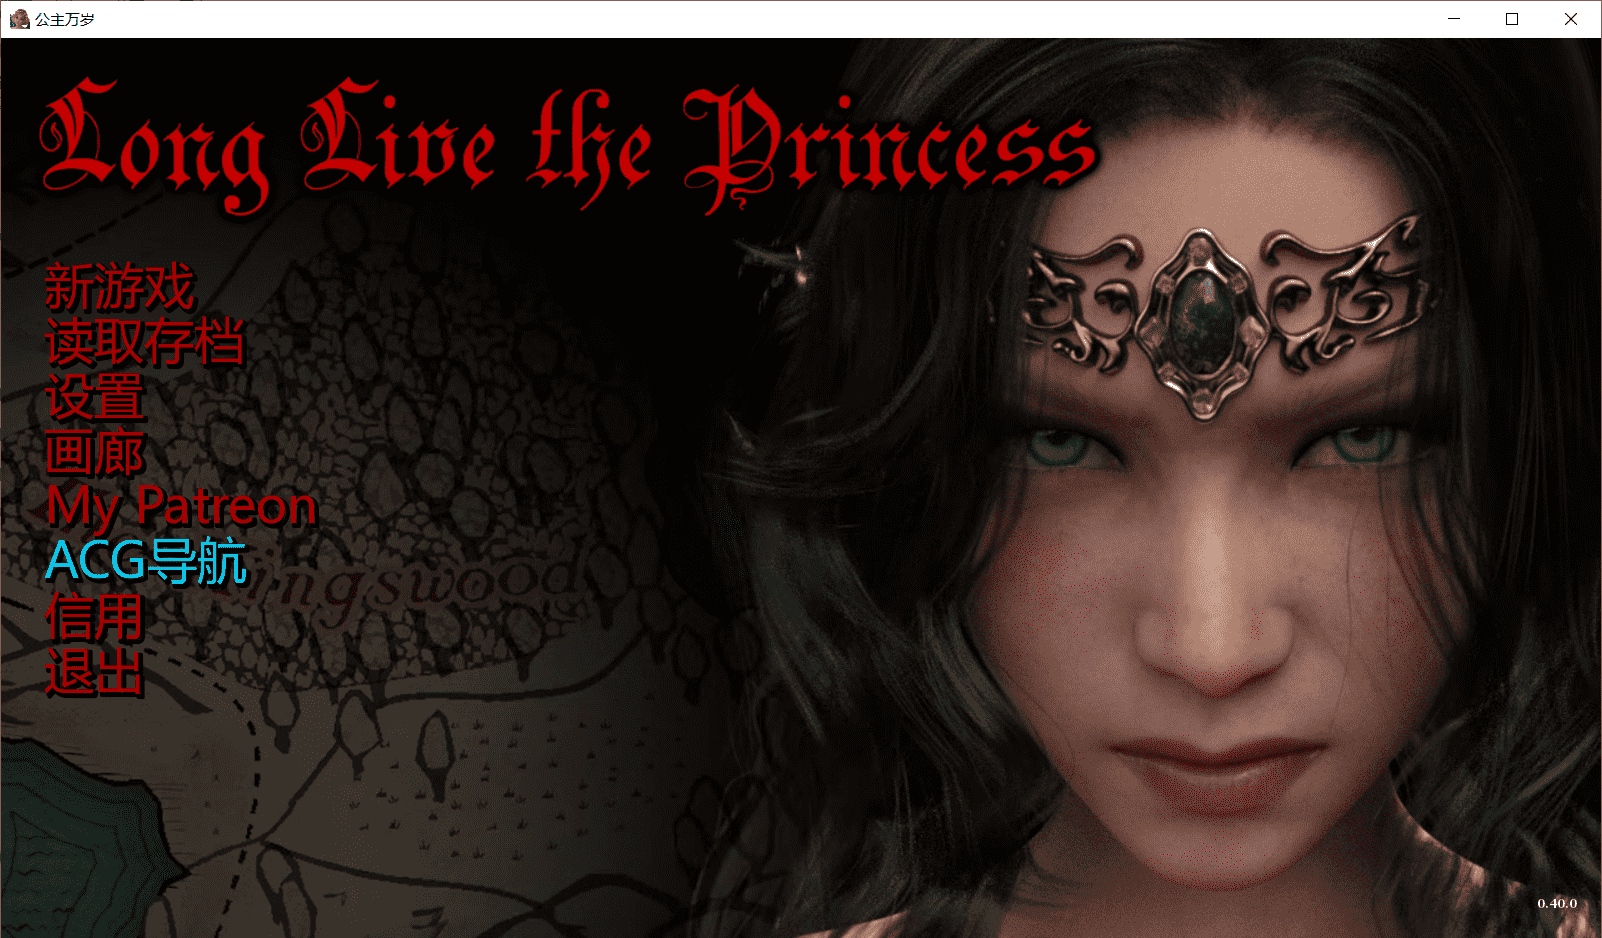 【欧美SLG/汉化/动态】公主万岁Long Live the Princess v0.40.0 汉化版【PC+安卓/3G】-小皮ACG-二次元资源分享